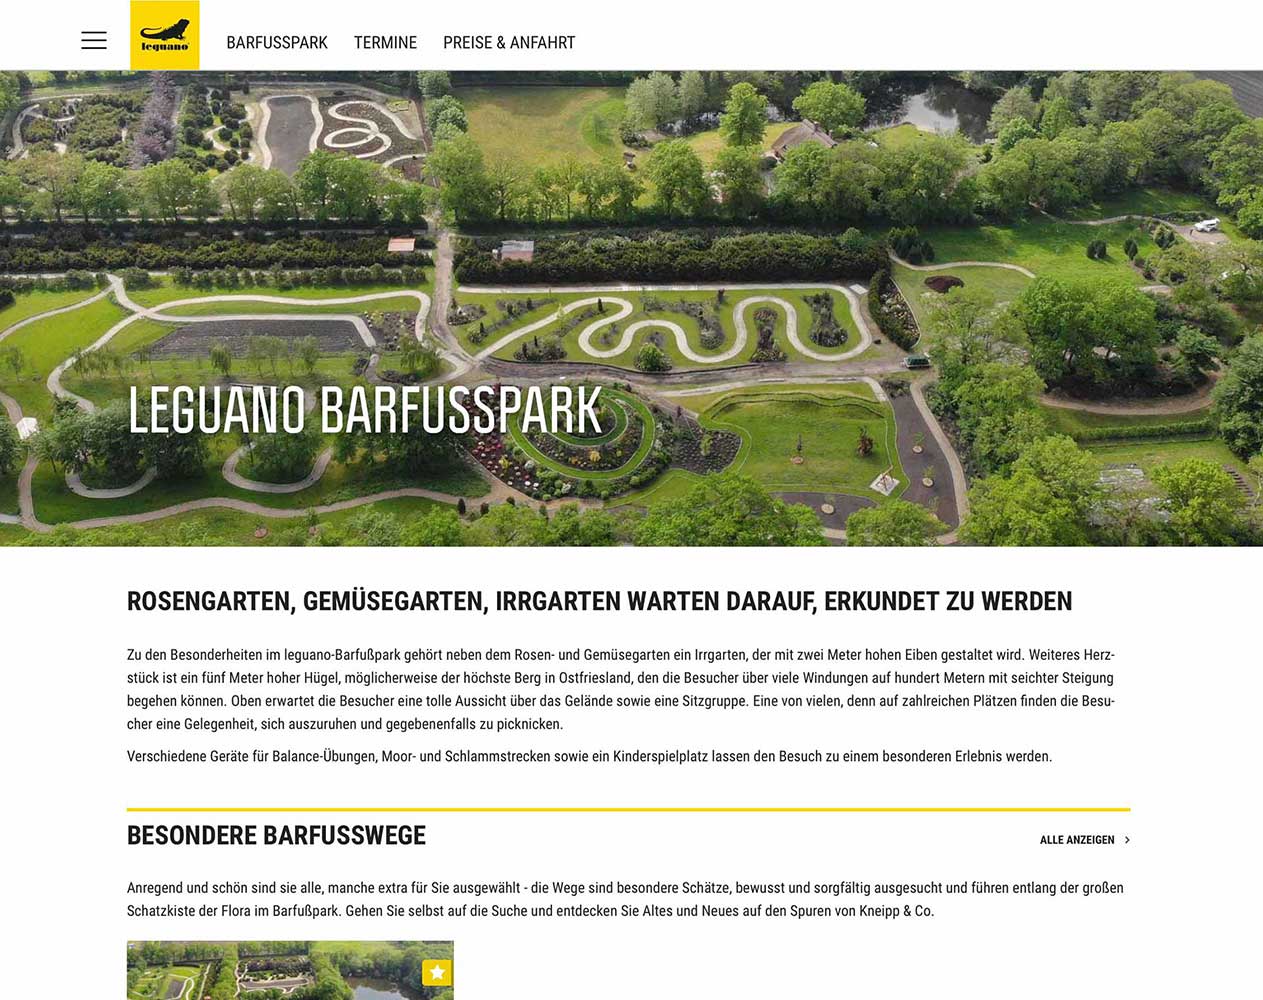 leguano Barfußpark / Microsite für Barfuß-Liebhaber > gestaltet als interaktive Broschüre zur Naherholung